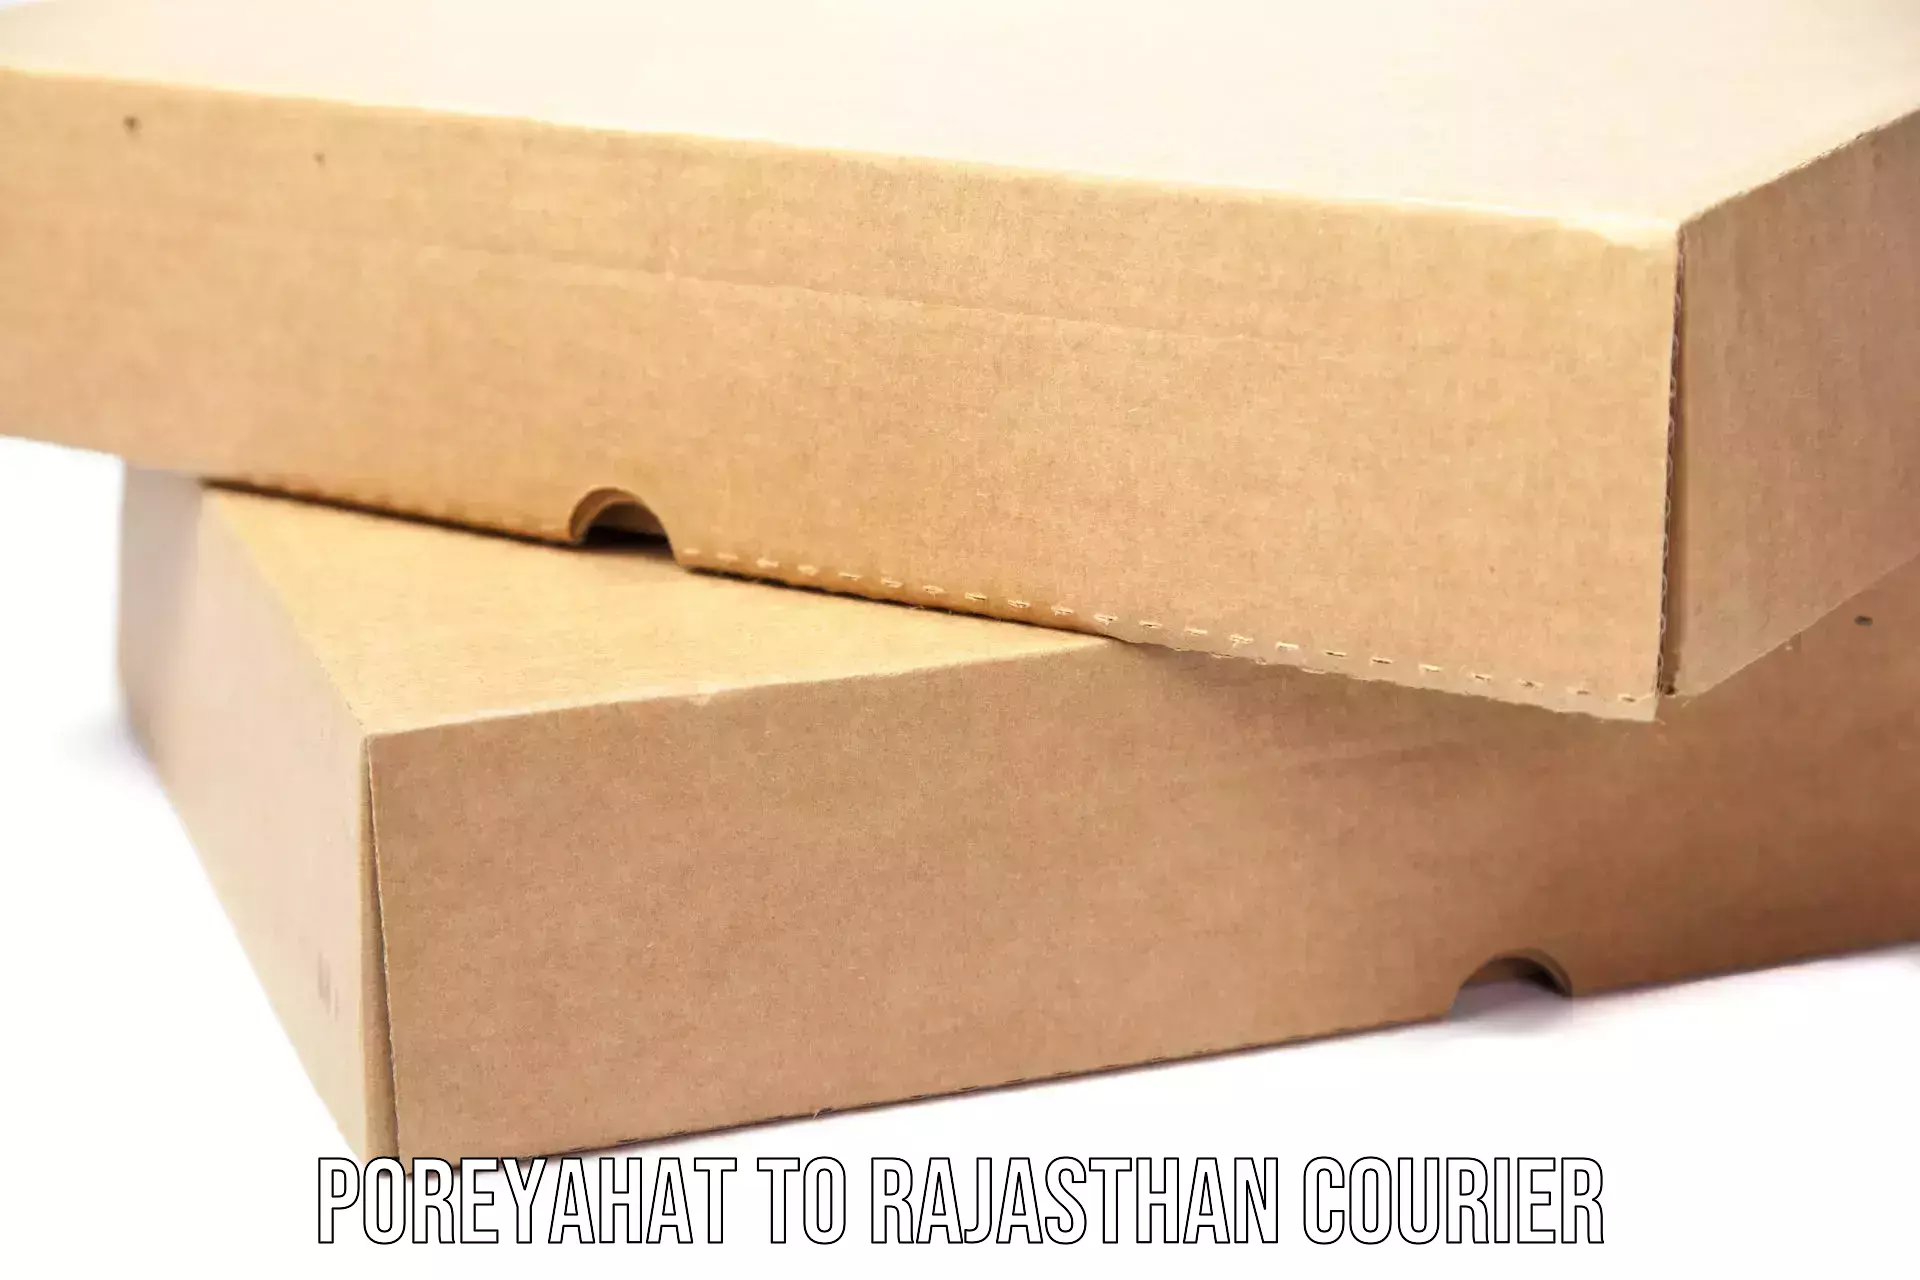 Smart courier technologies Poreyahat to Balaran